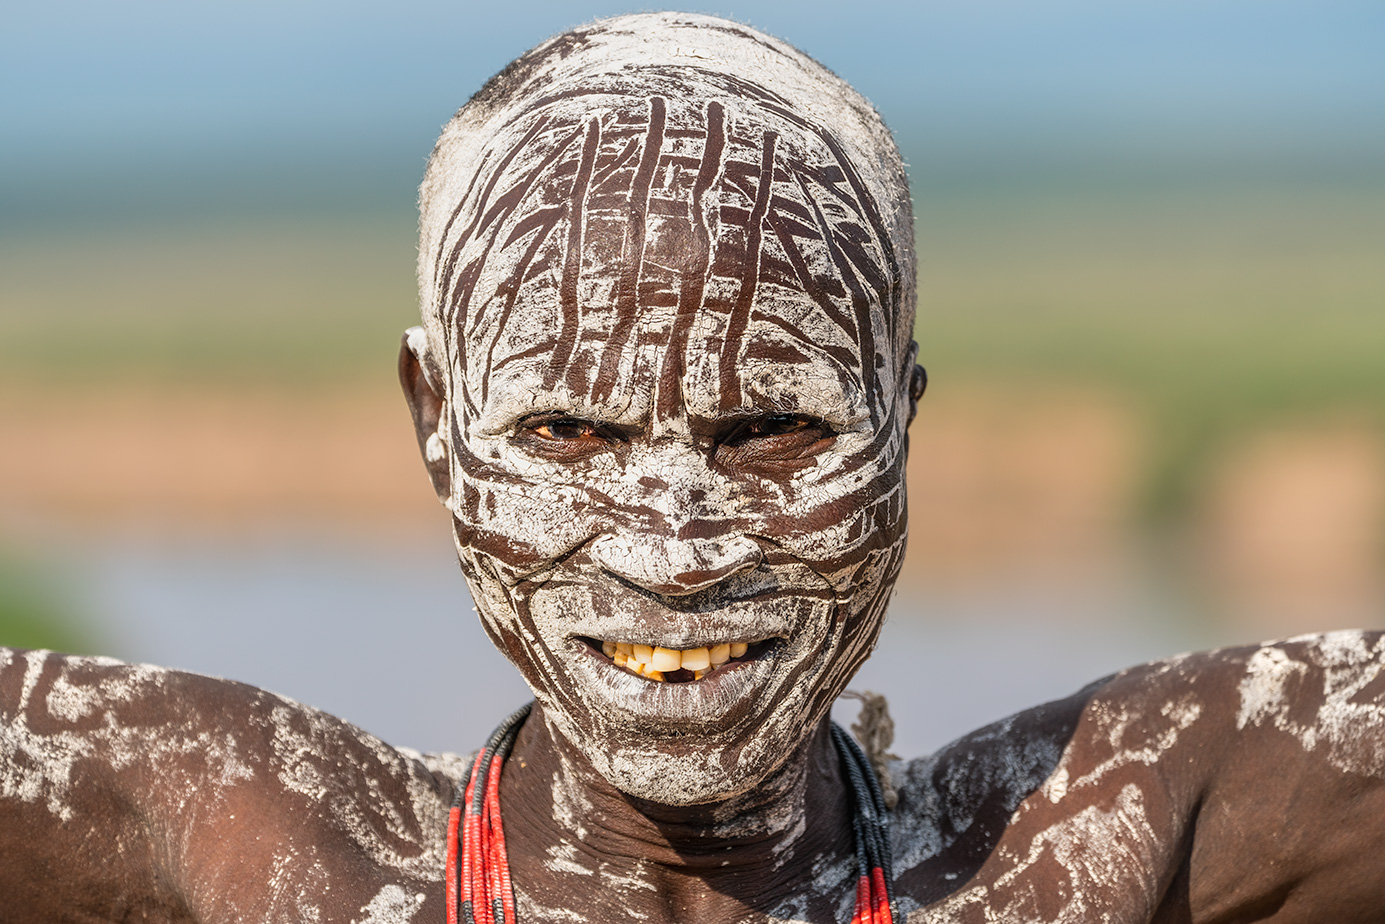 Afrikanischer Krieger fotografier von Benny Rebel auf einer Fotoreise in Äthiopien